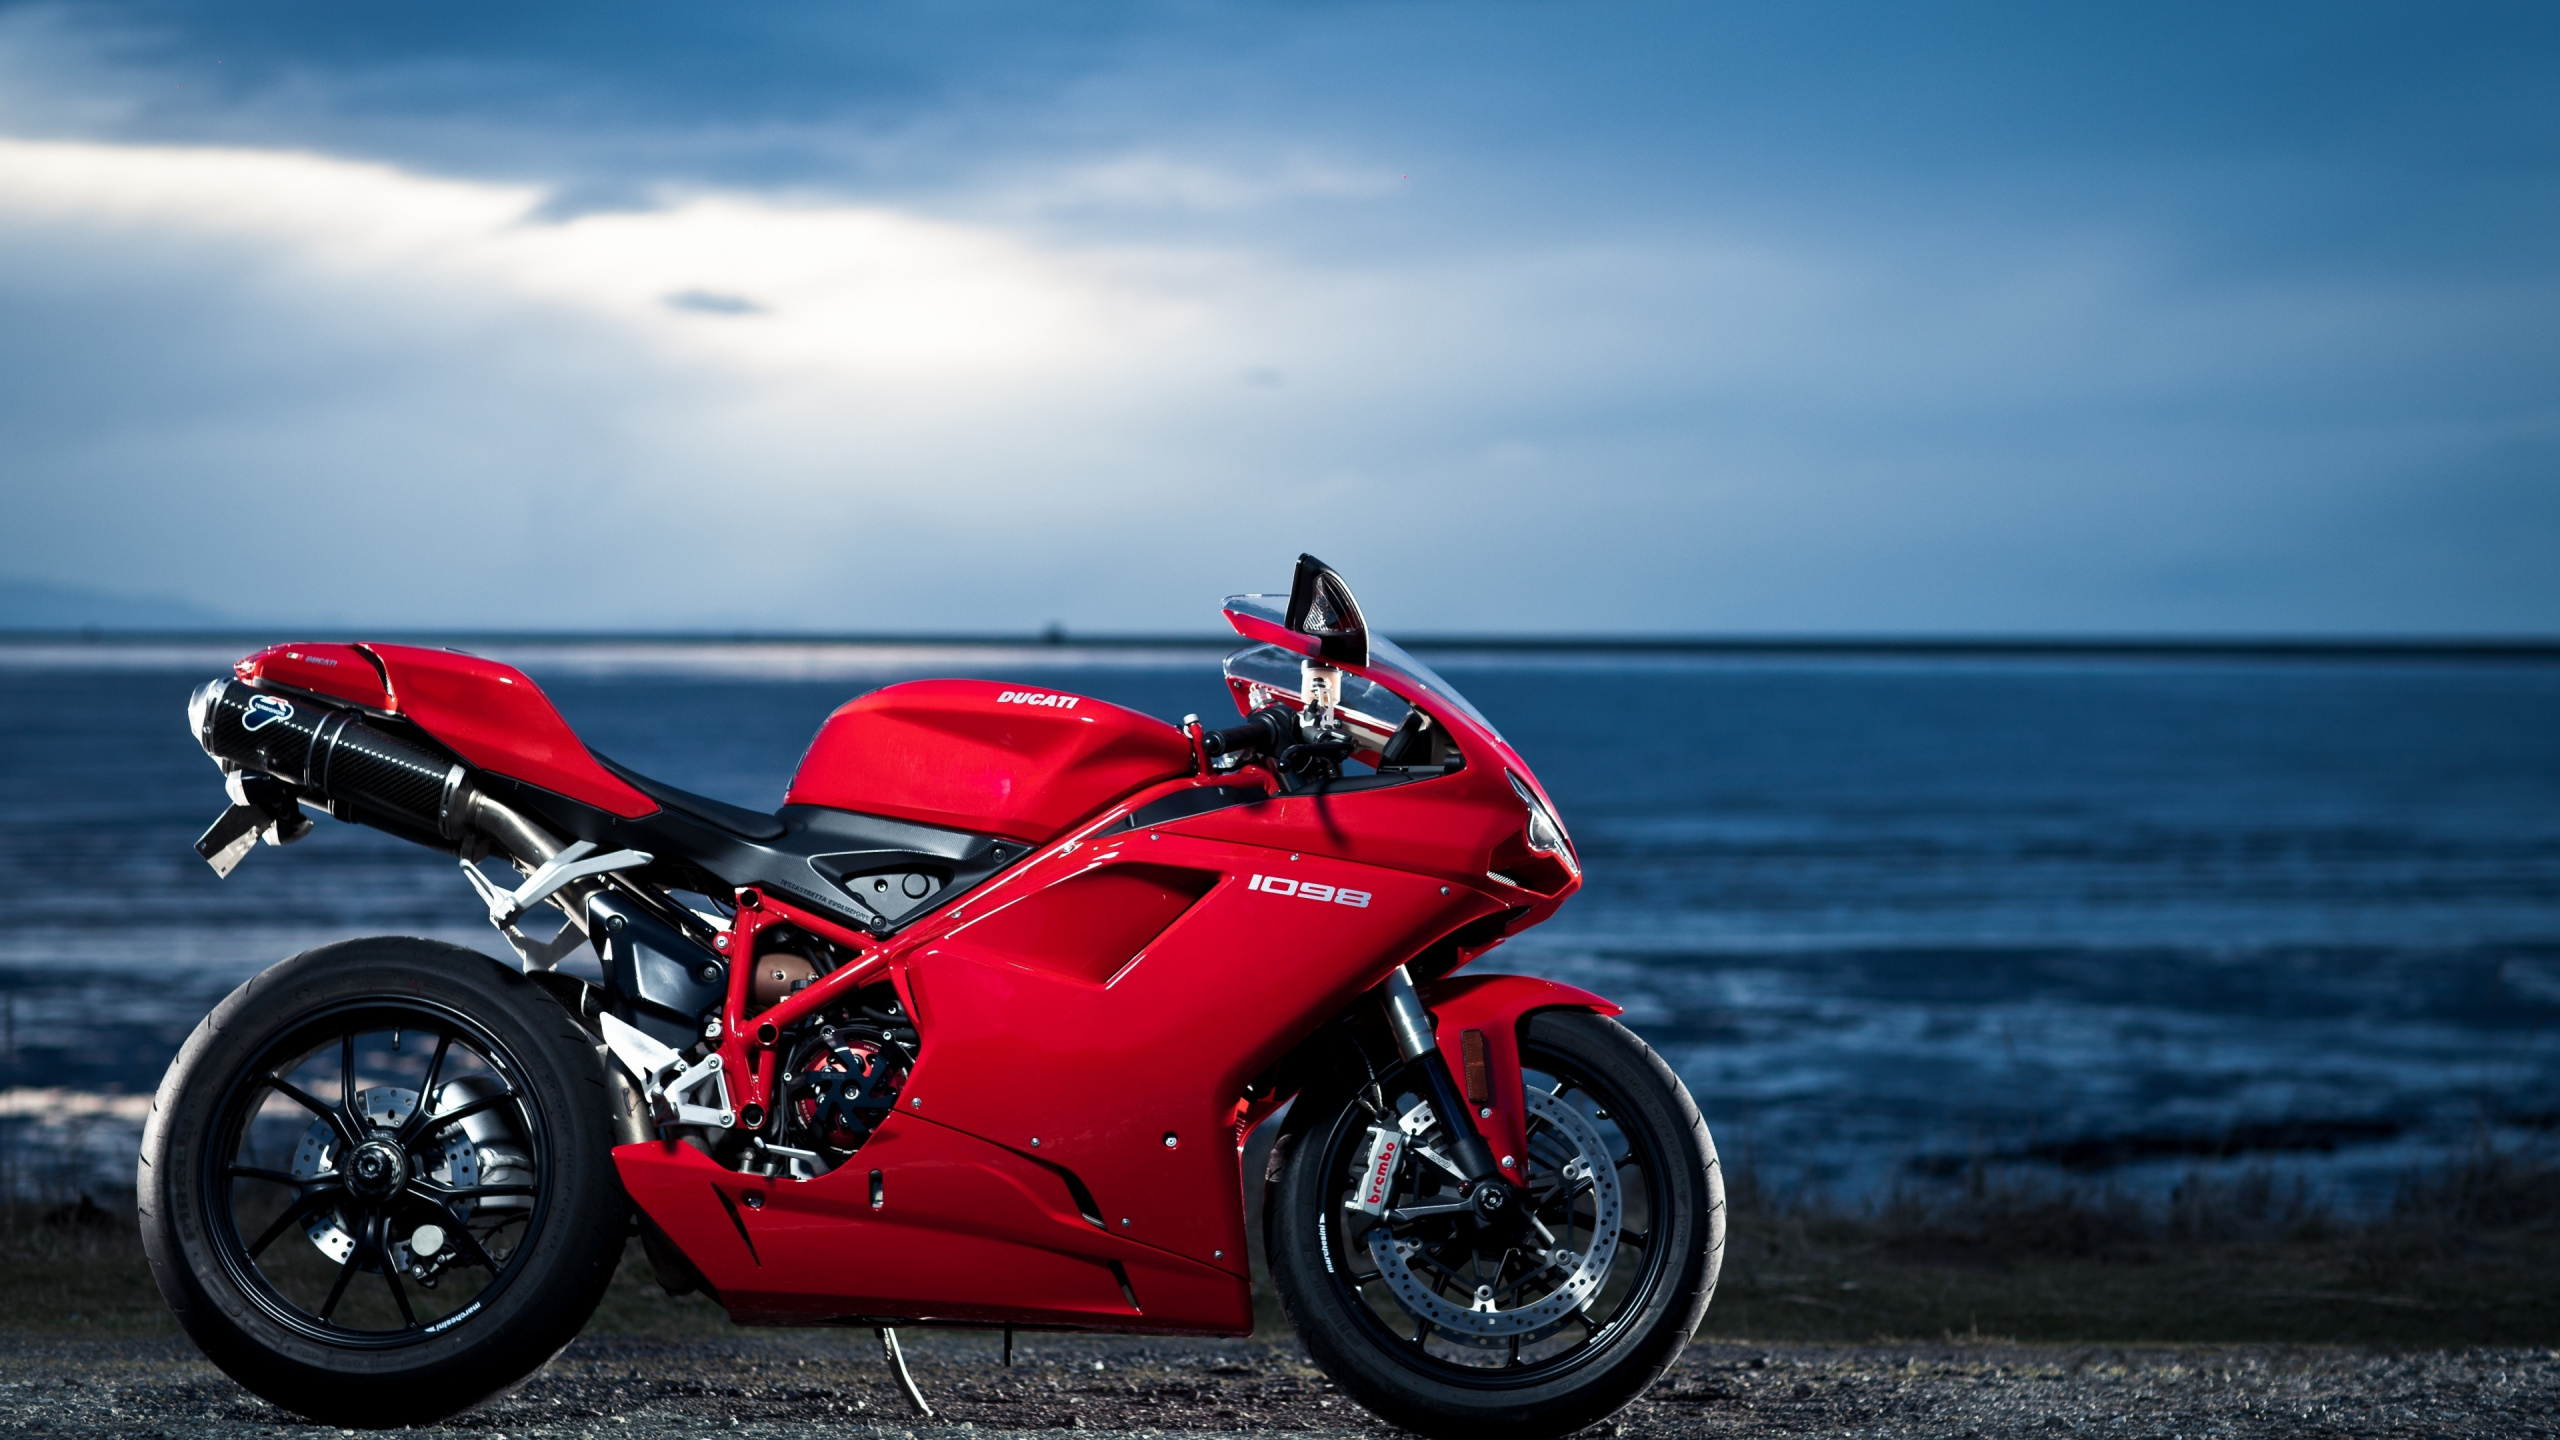 Обои дукати 1098, ducati, мотоцикл, красный цвет, авто в разрешении 2560x1440